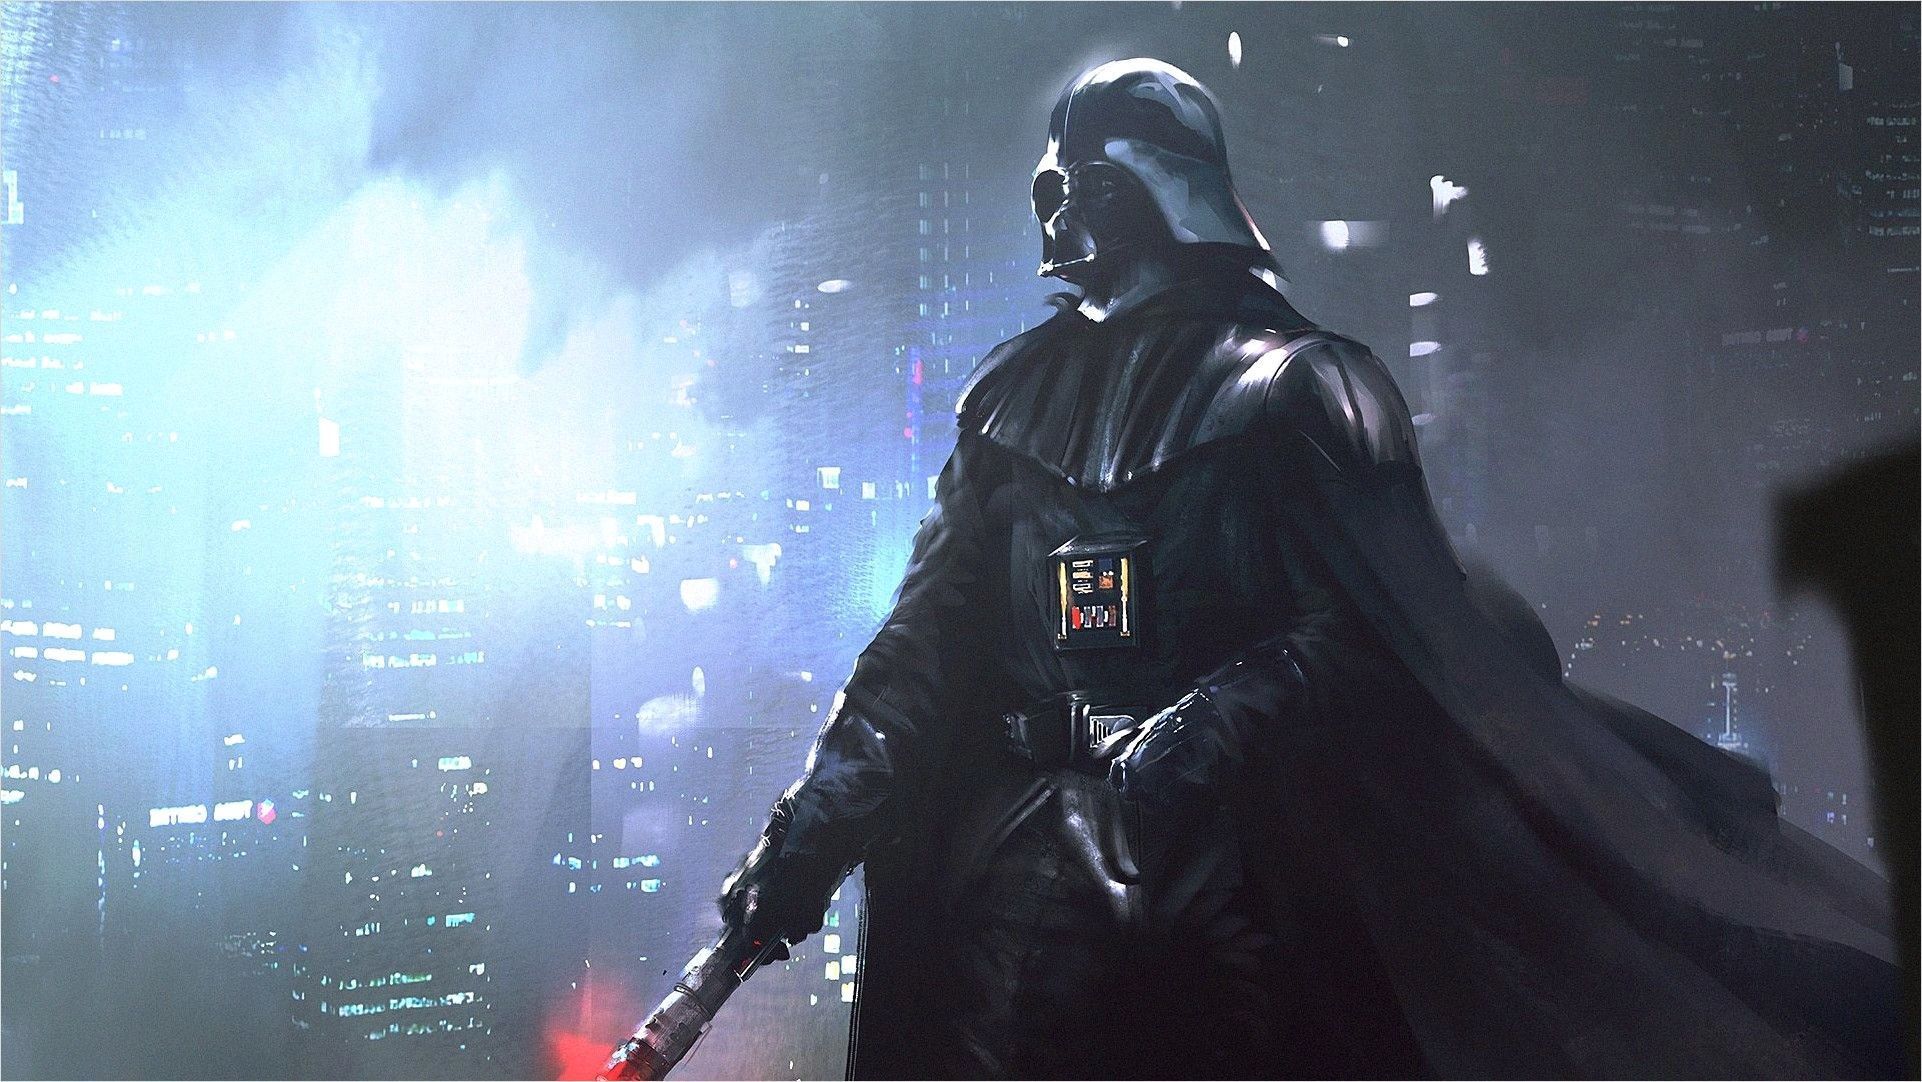 Darth Vader Wallpaper